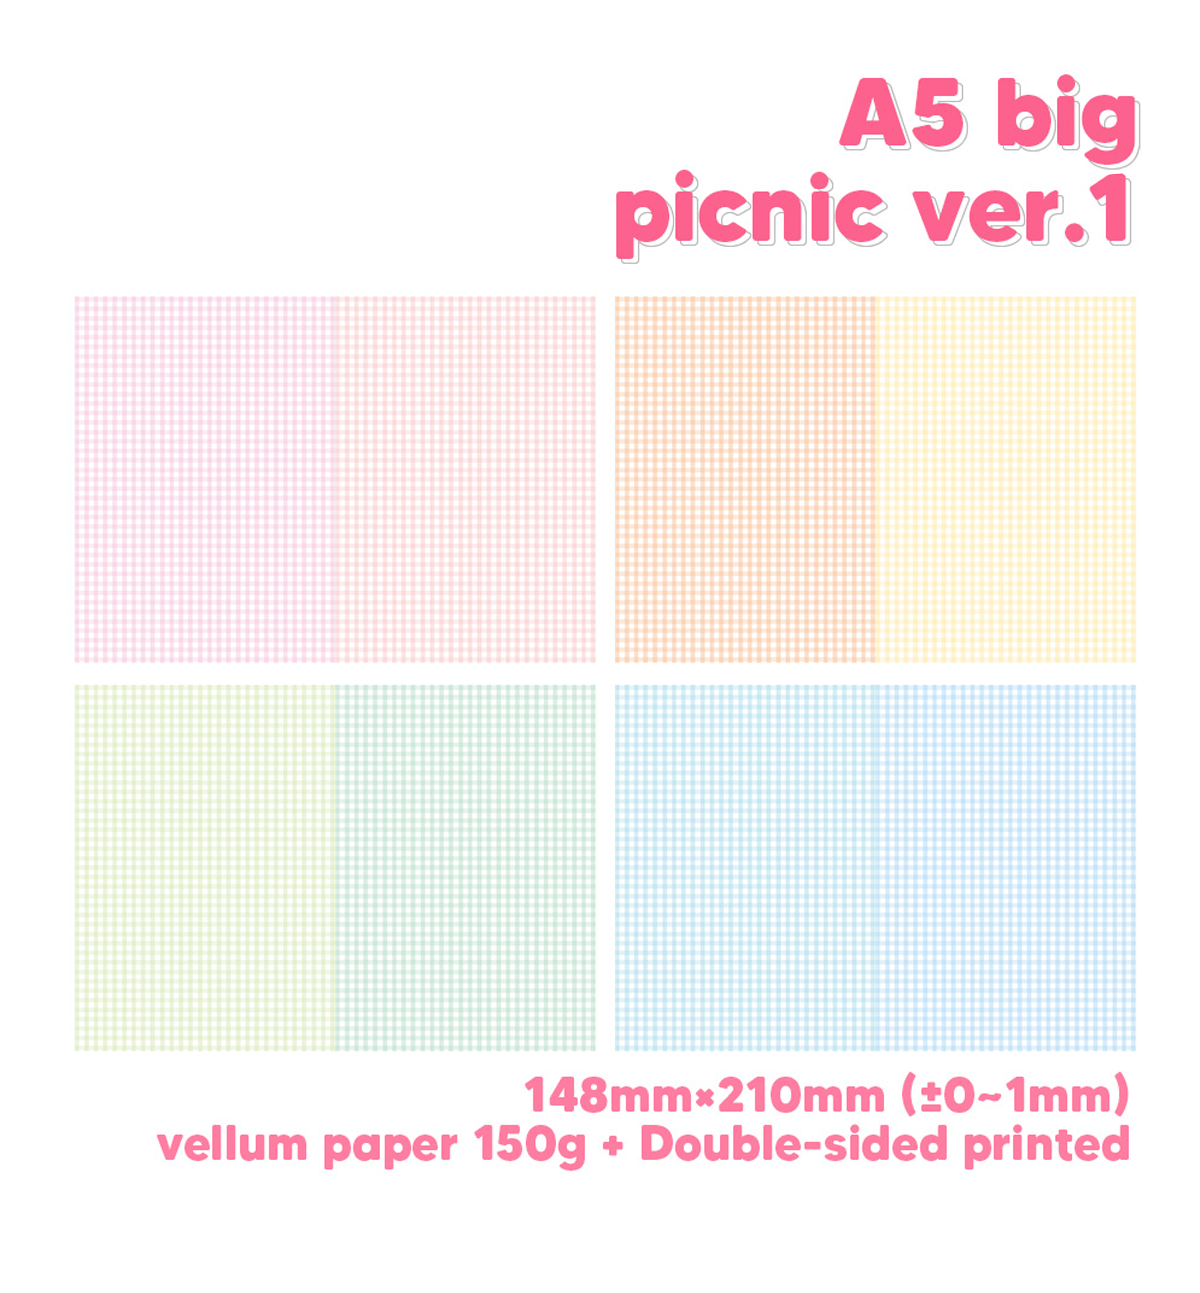 A5 Picnic Paper Refill [Ver.1]